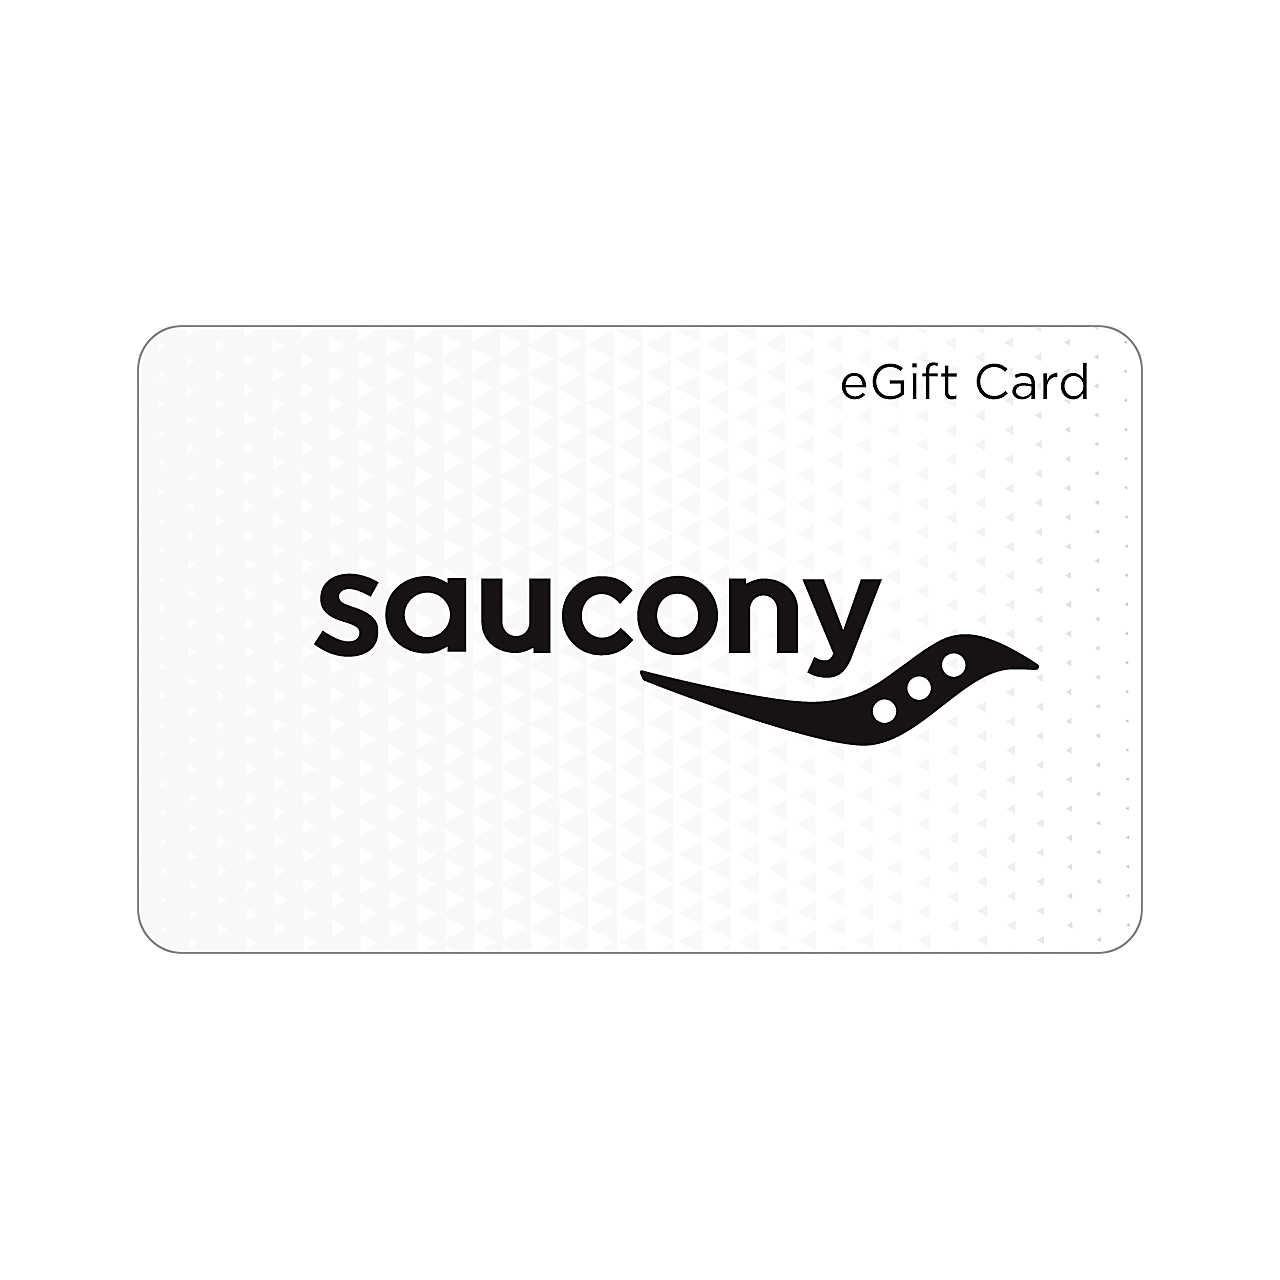 www.saucony.com